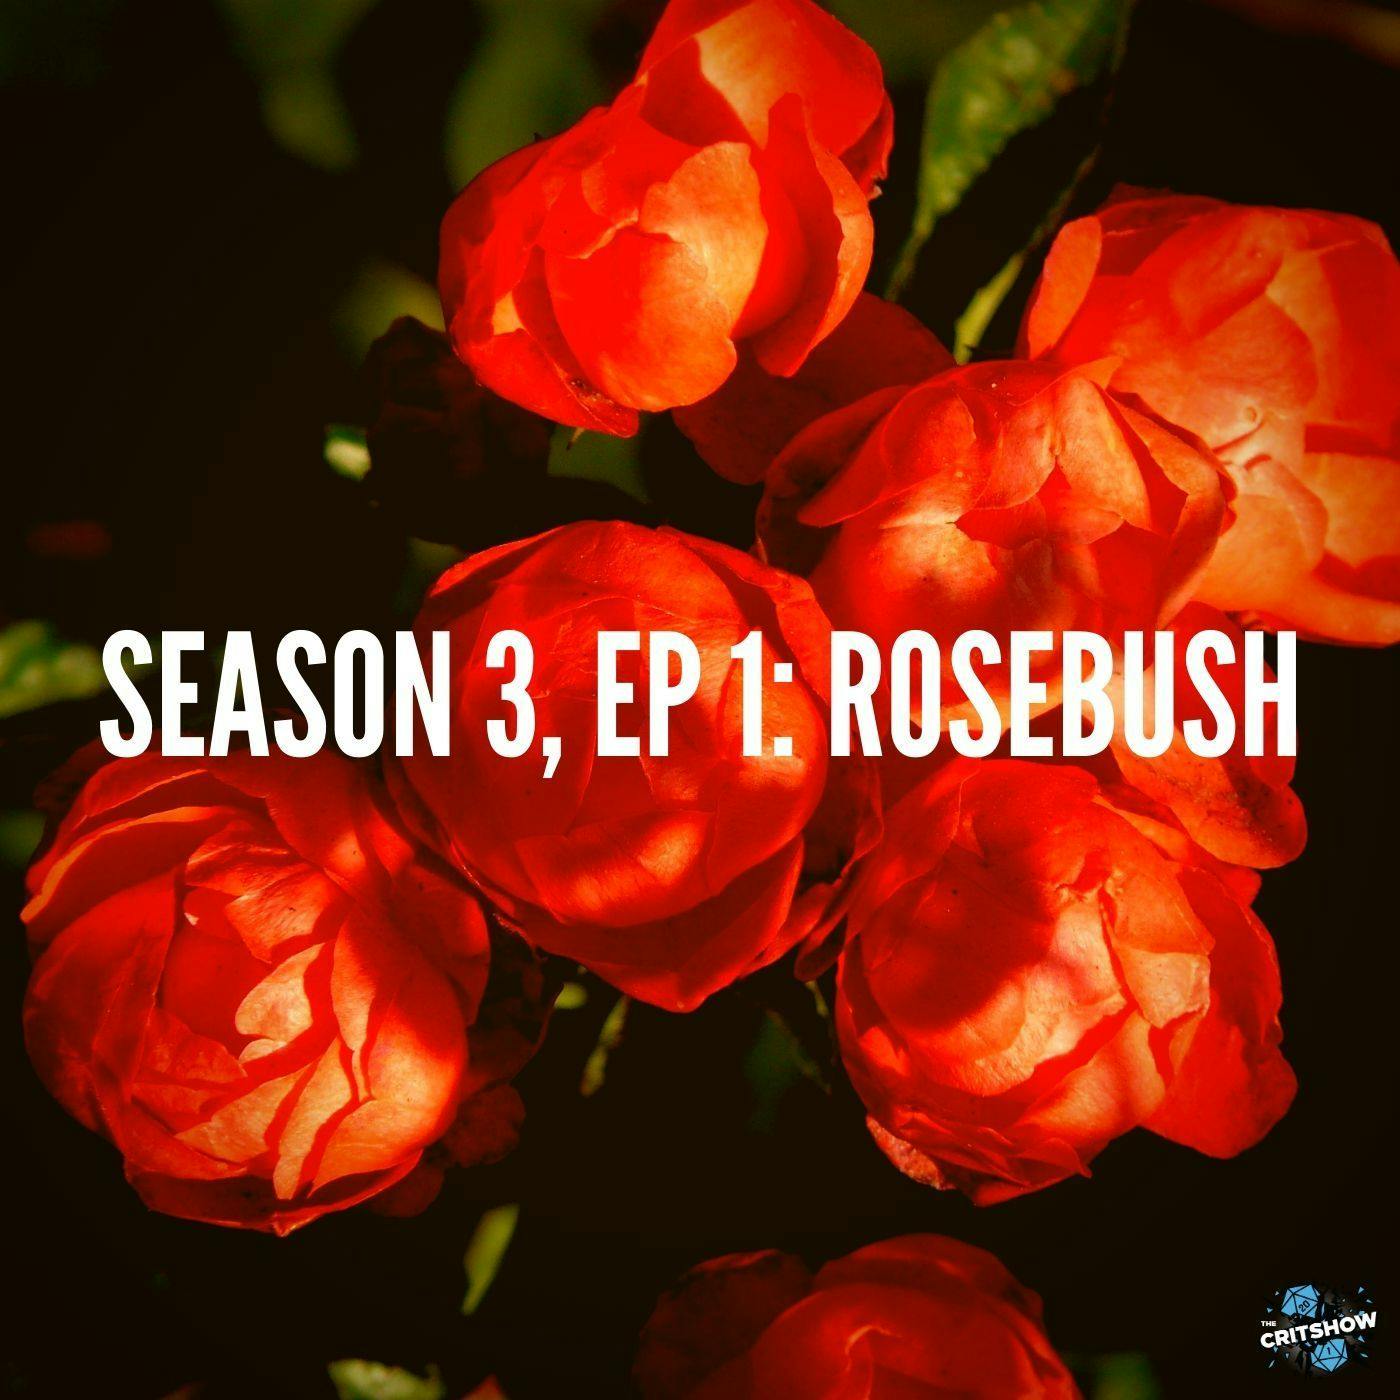 Rosebush (S3, E1)